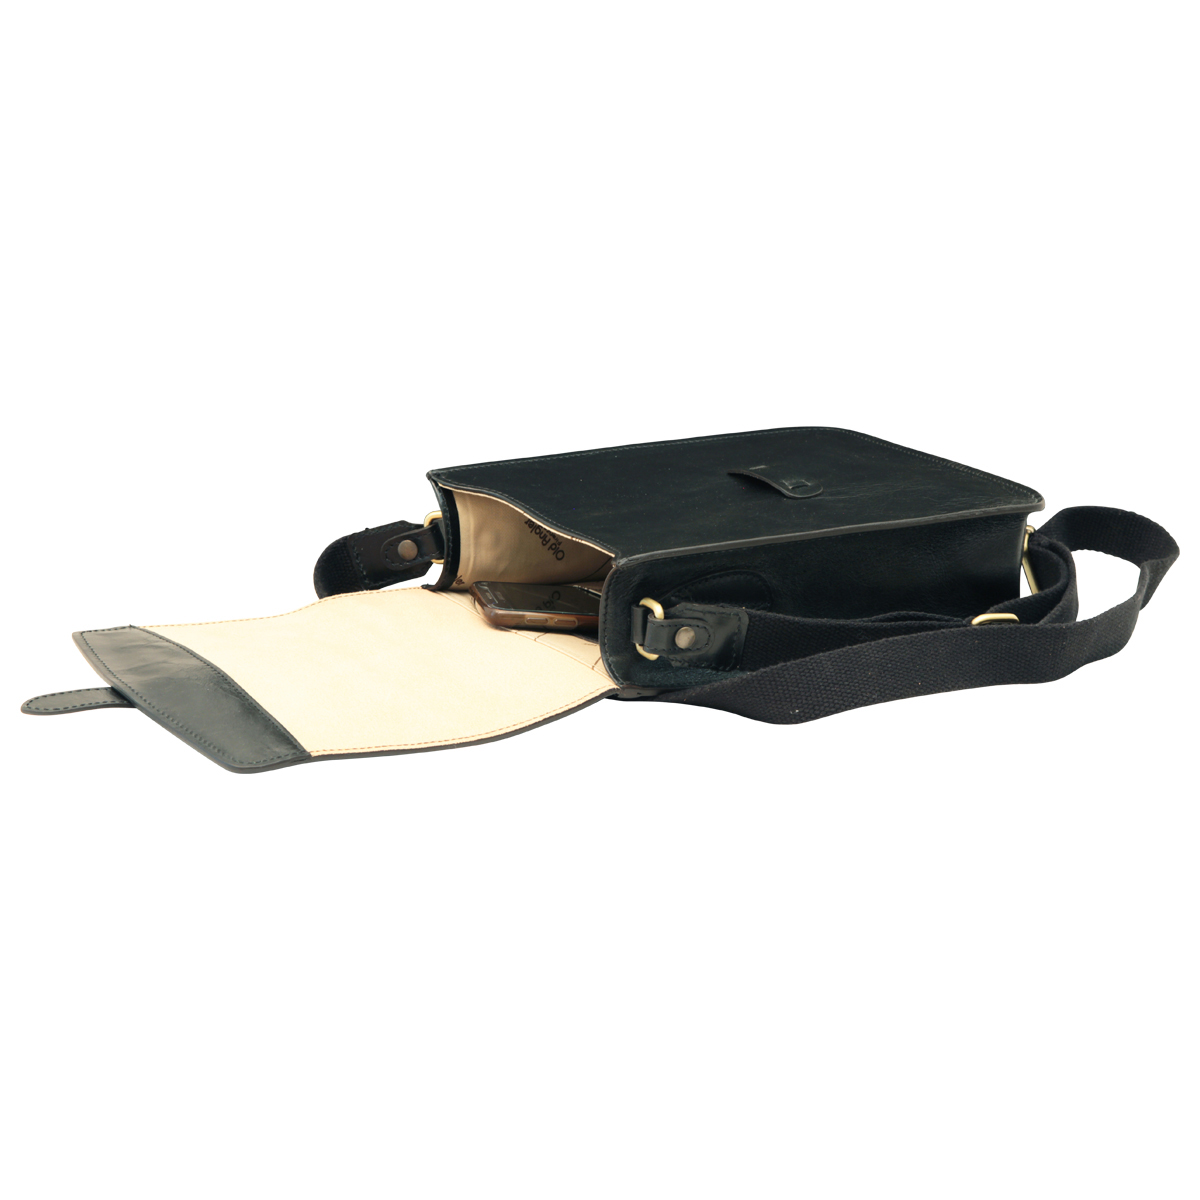 Cowhide leather messenger bag - Black | 411489NE UK | Old Angler Firenze